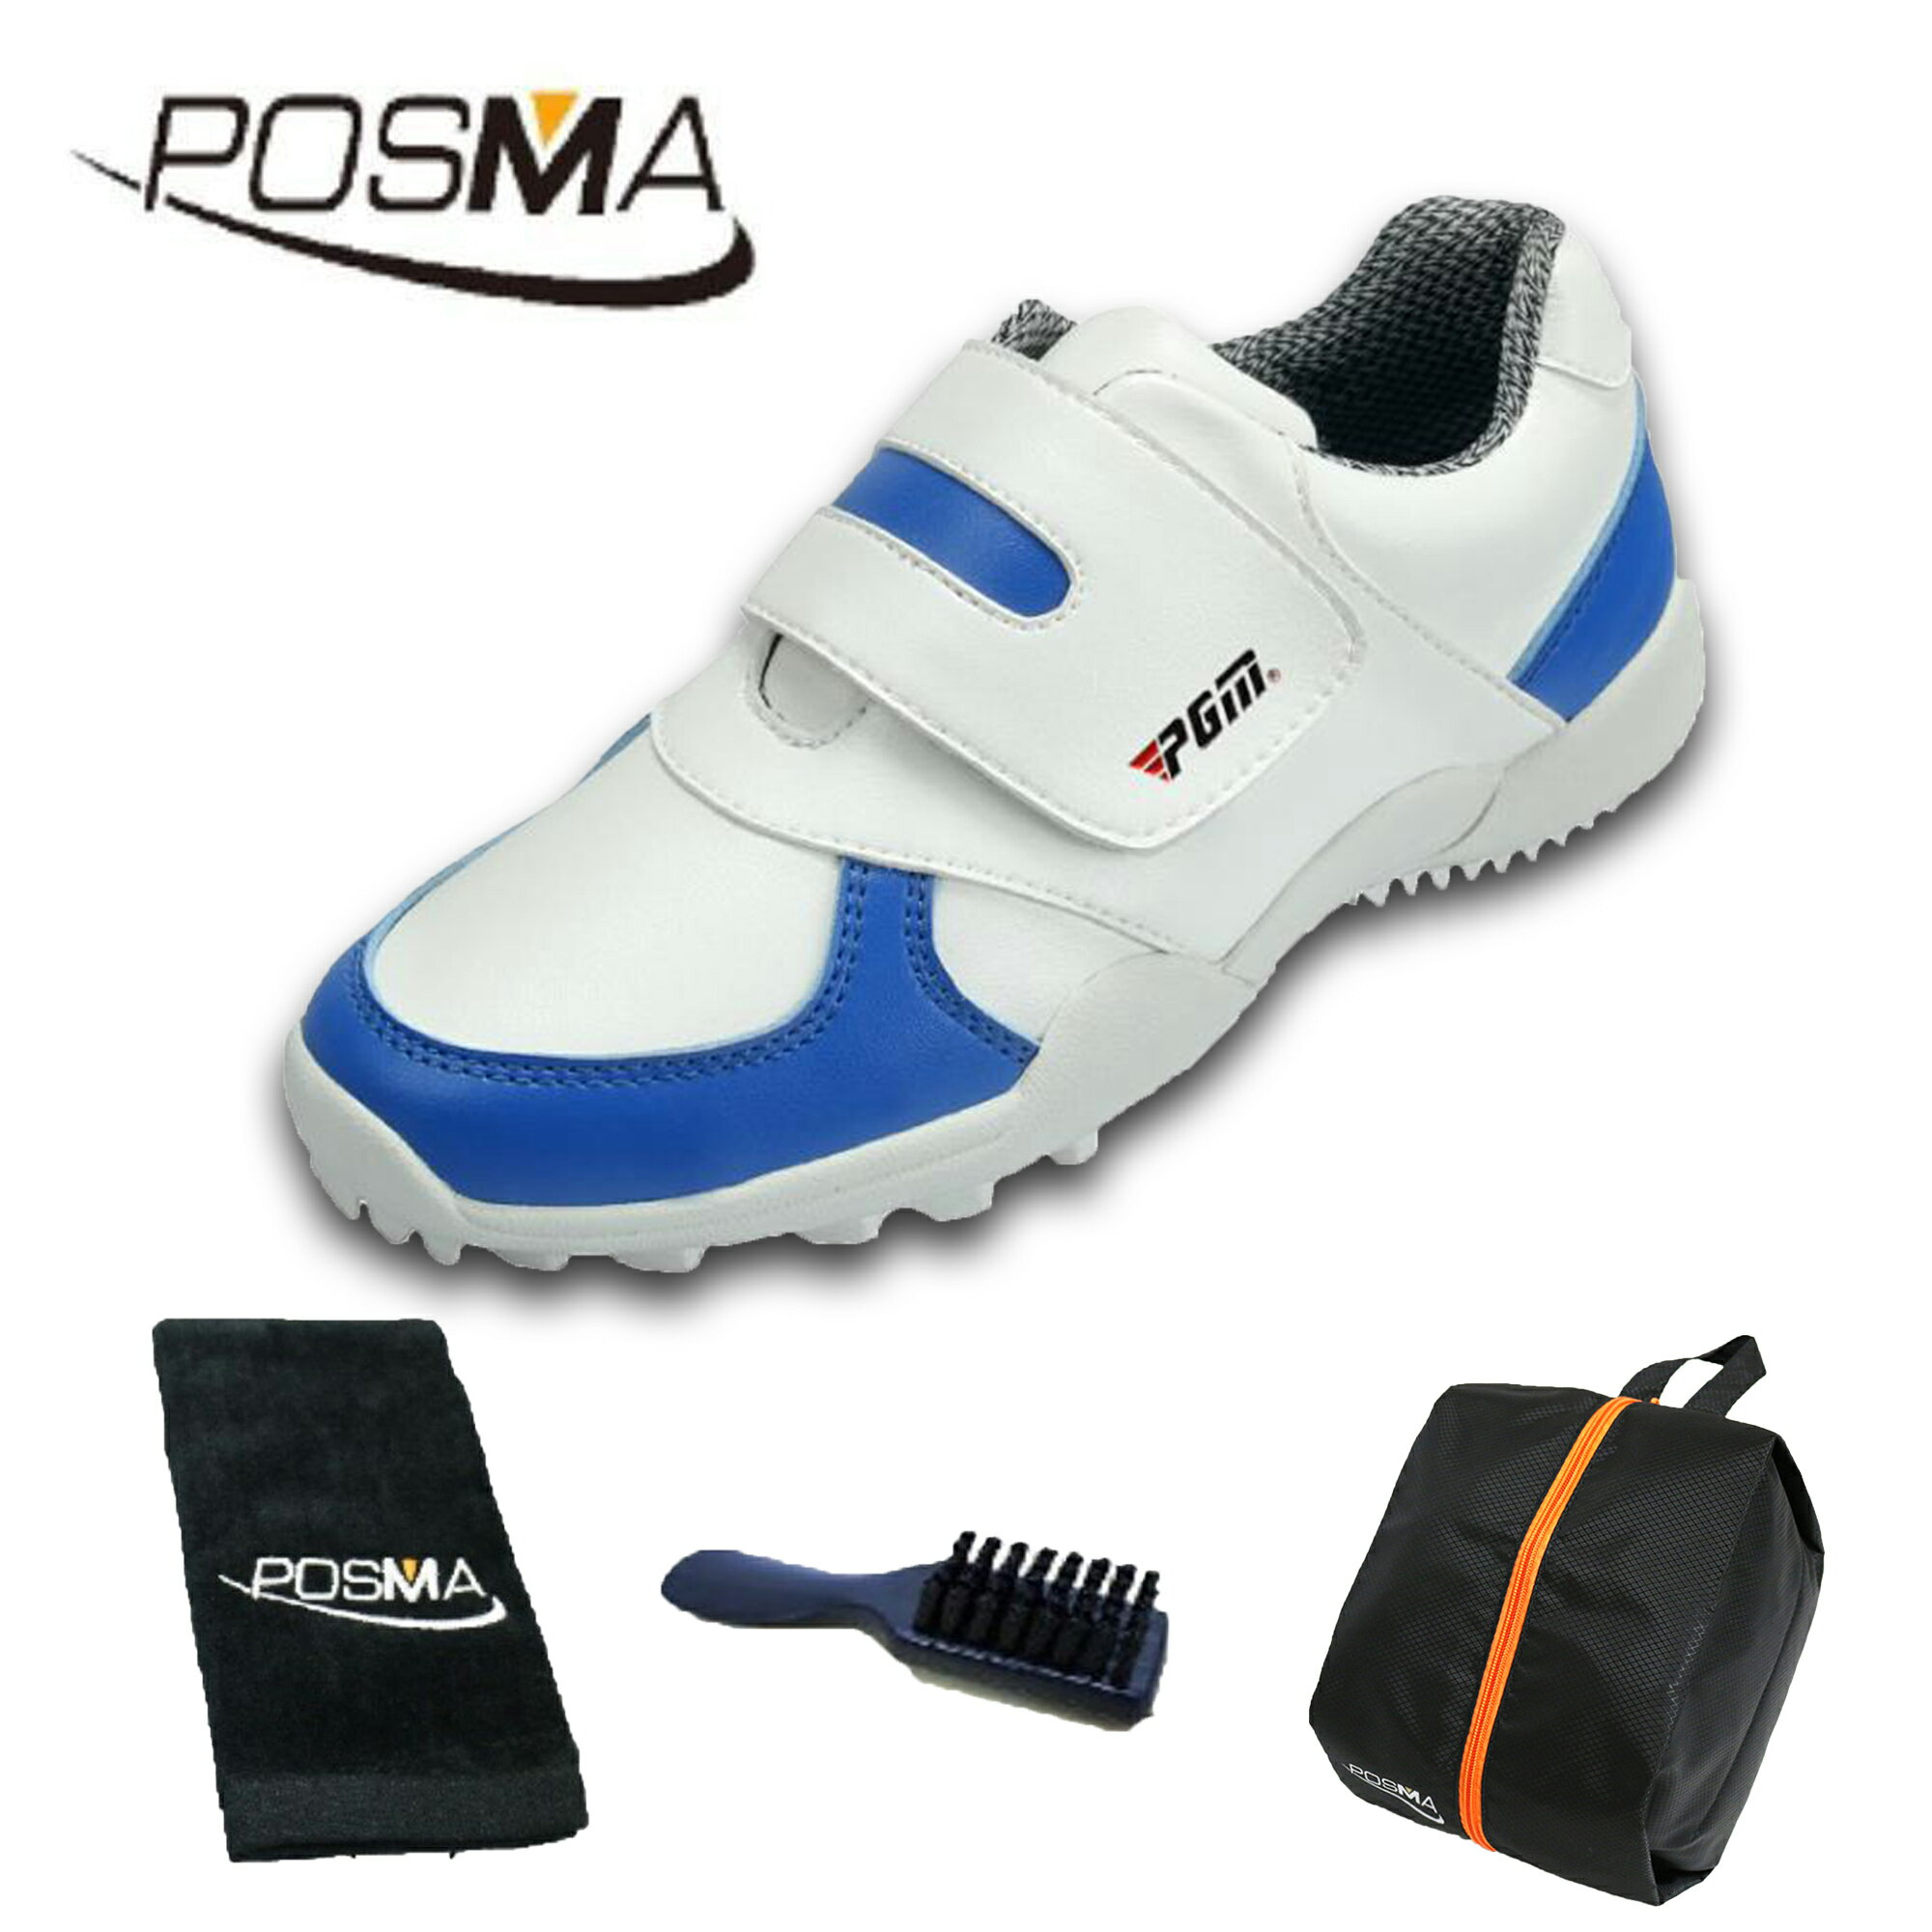 兒童高爾夫球鞋 女童 多色可選 舒適透氣好看 GSH054藍 配POSMA鞋包 2合1清潔刷 高爾夫球毛巾